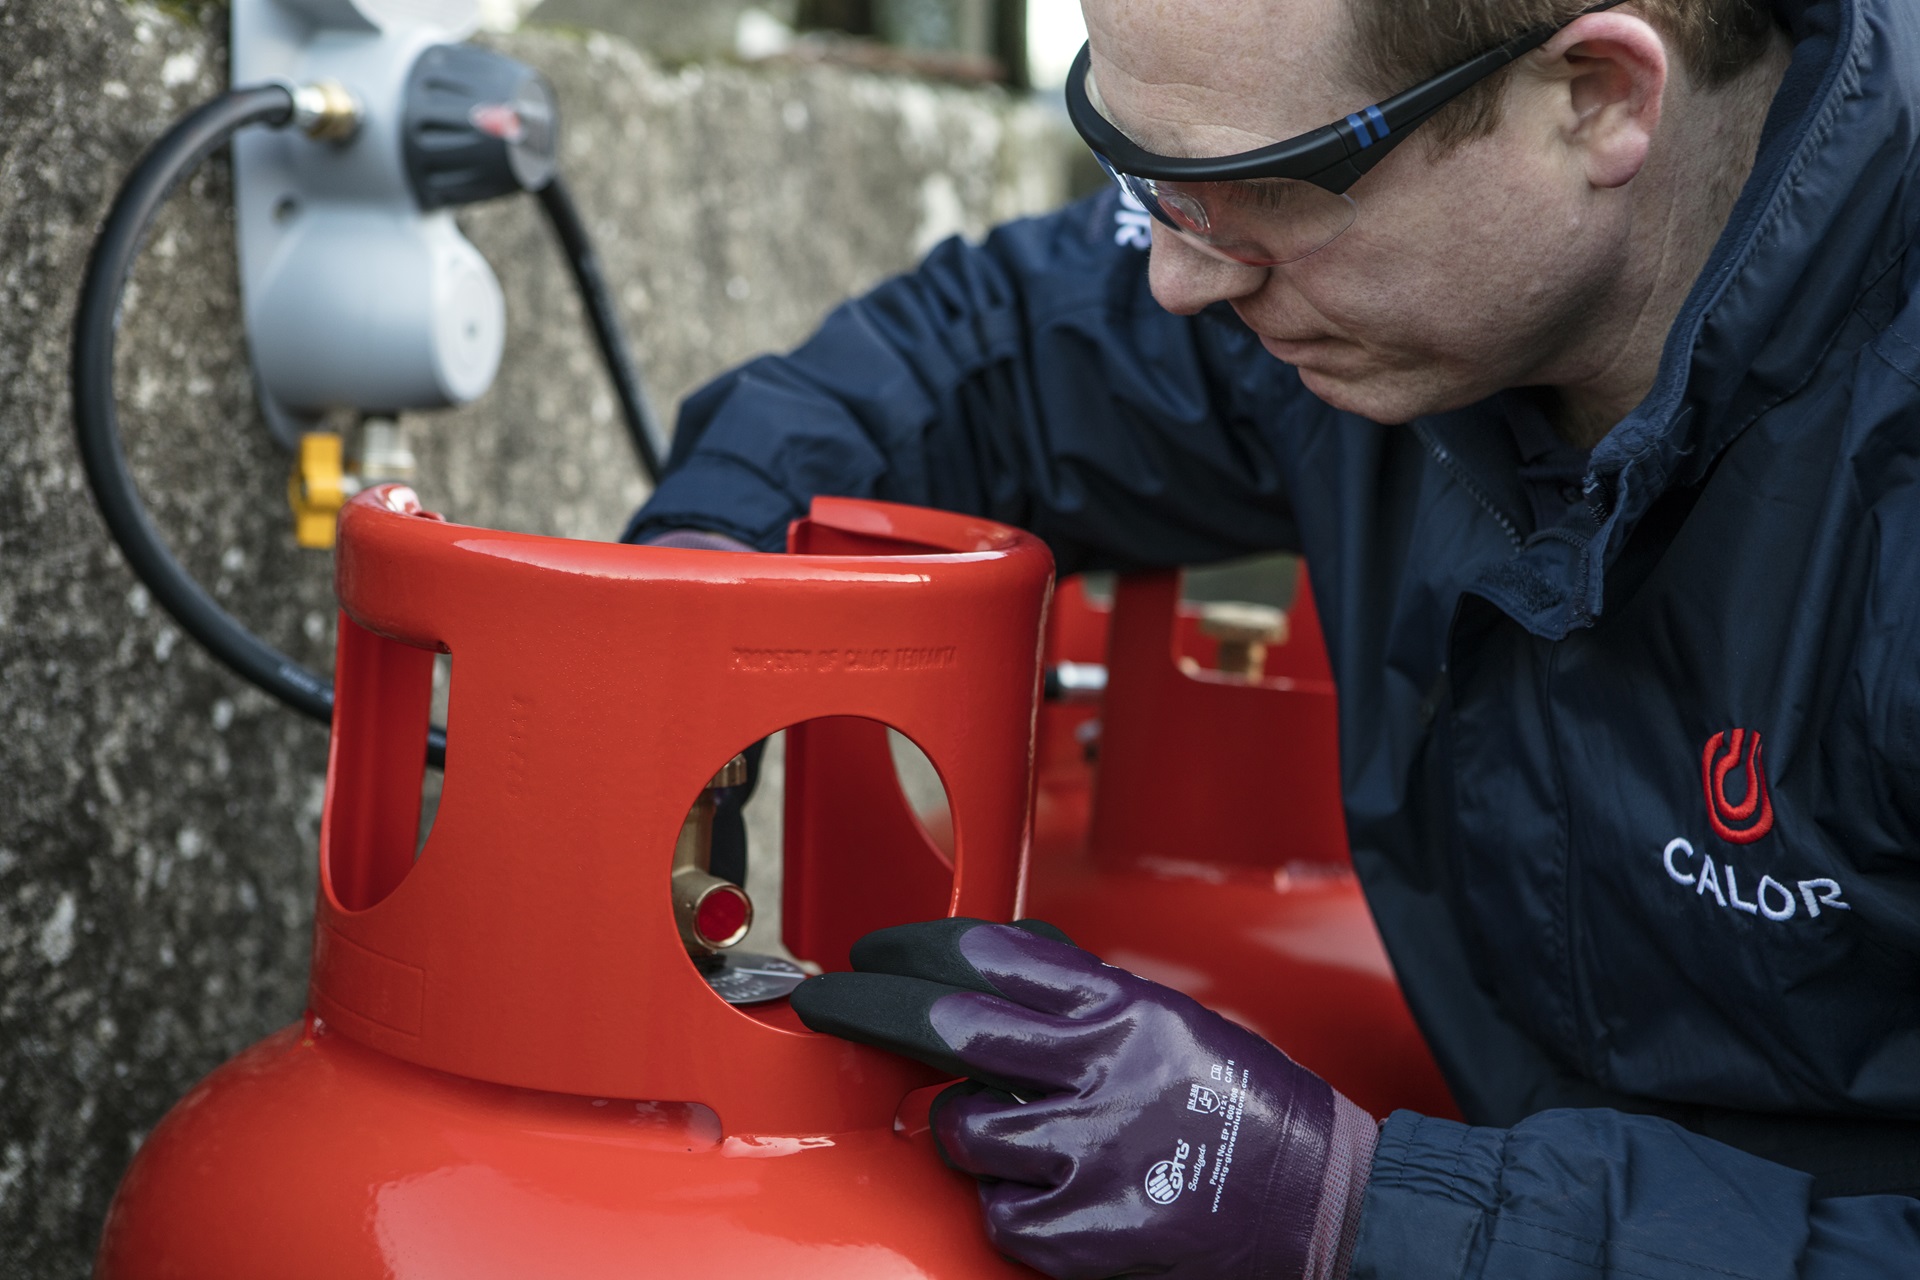 Calor Gas Cylinder Safety Tips